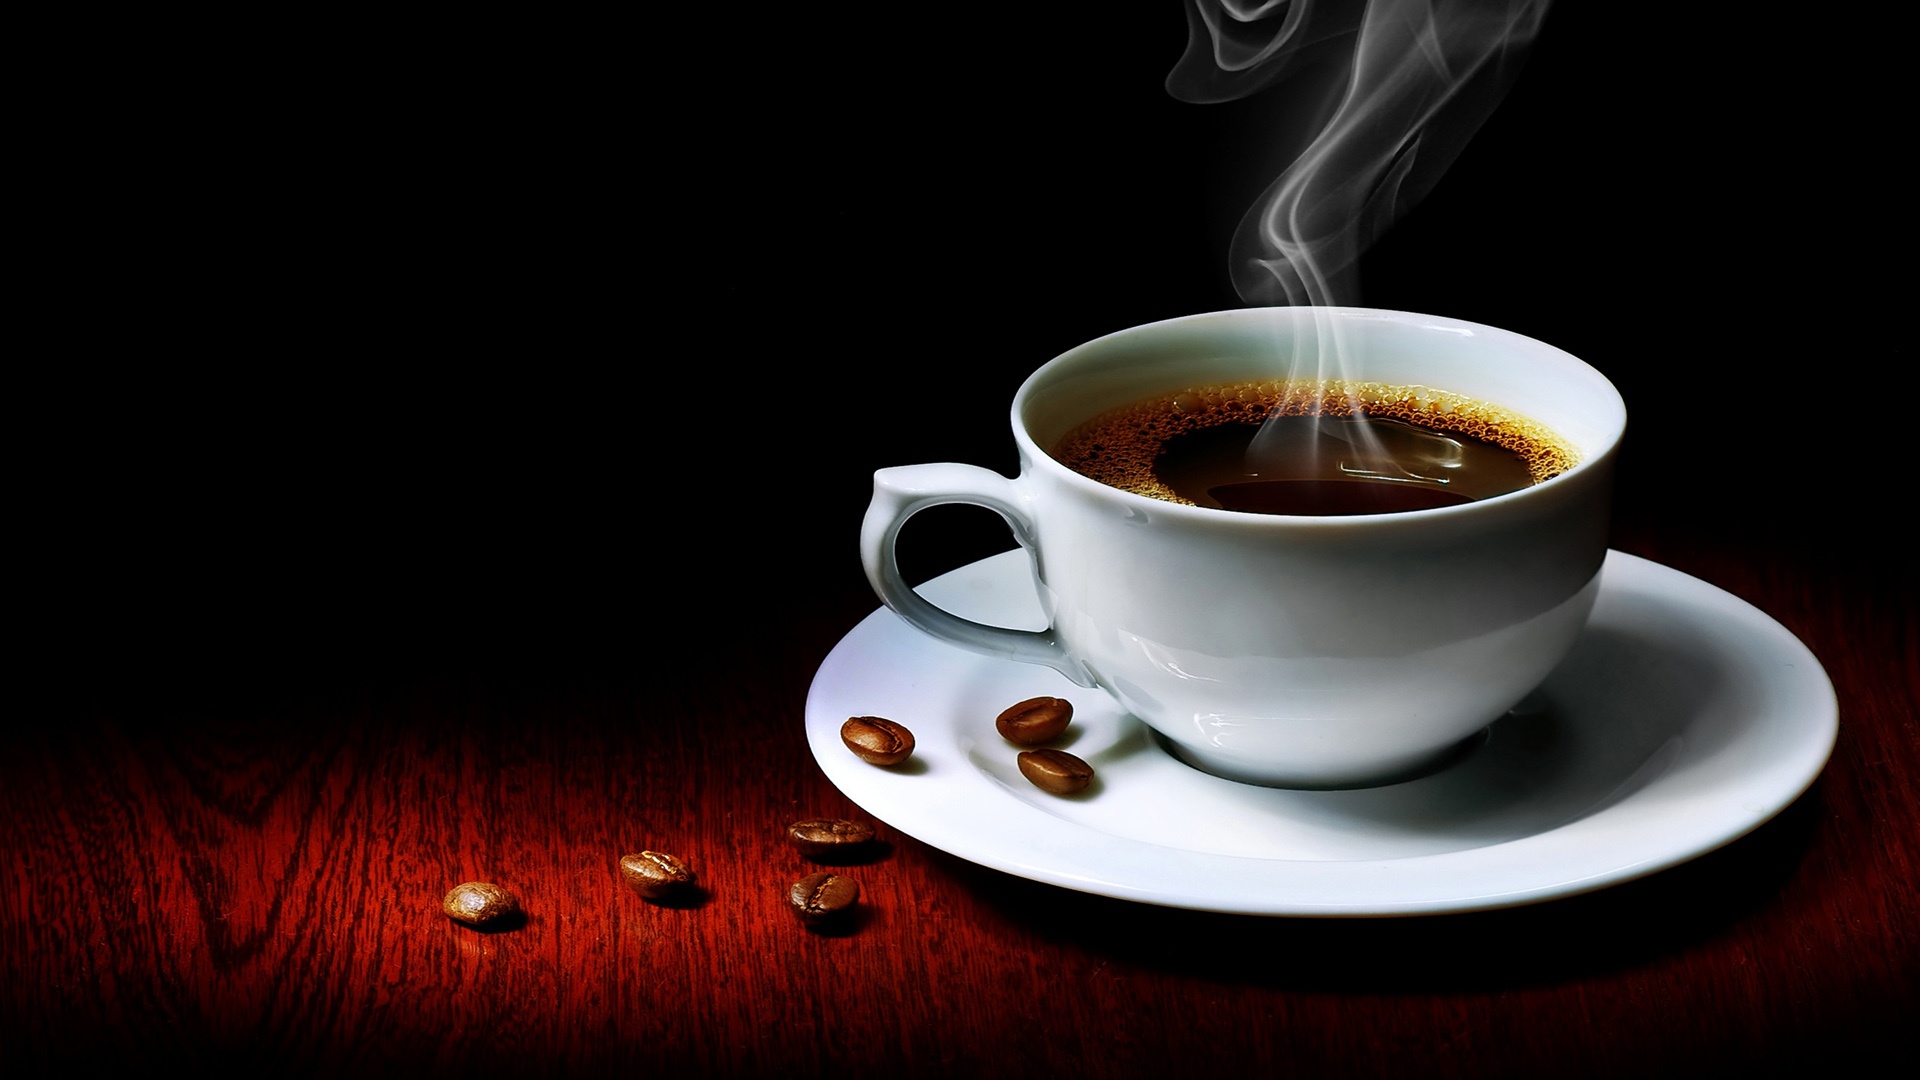 Gặp điều này, uống 2-4 ly cà phê có thể ngừa được đột quỵ - Ảnh 1.